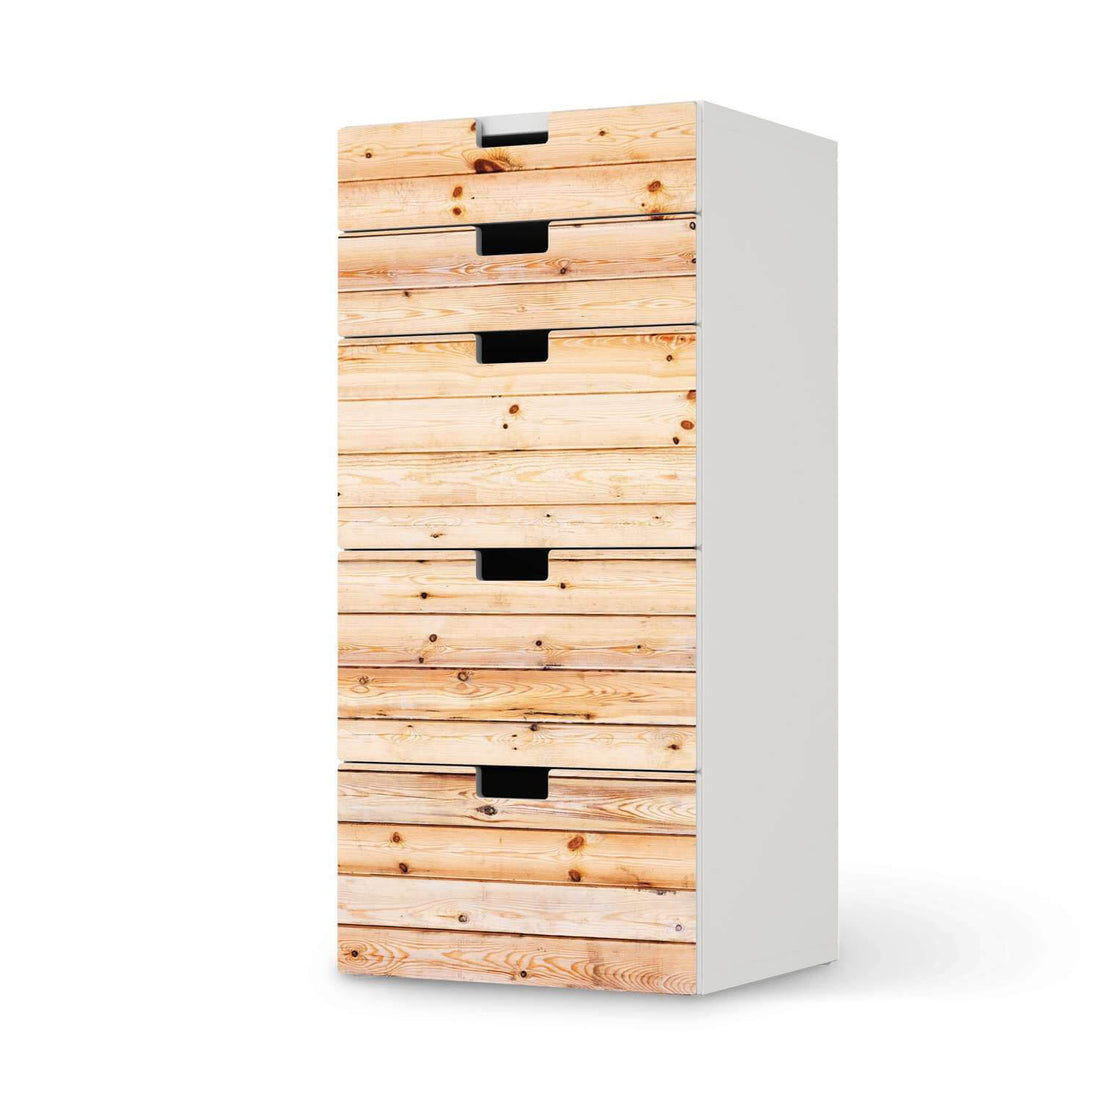 Möbel Klebefolie Bright Planks - IKEA Stuva Kommode - 5 Schubladen  - weiss